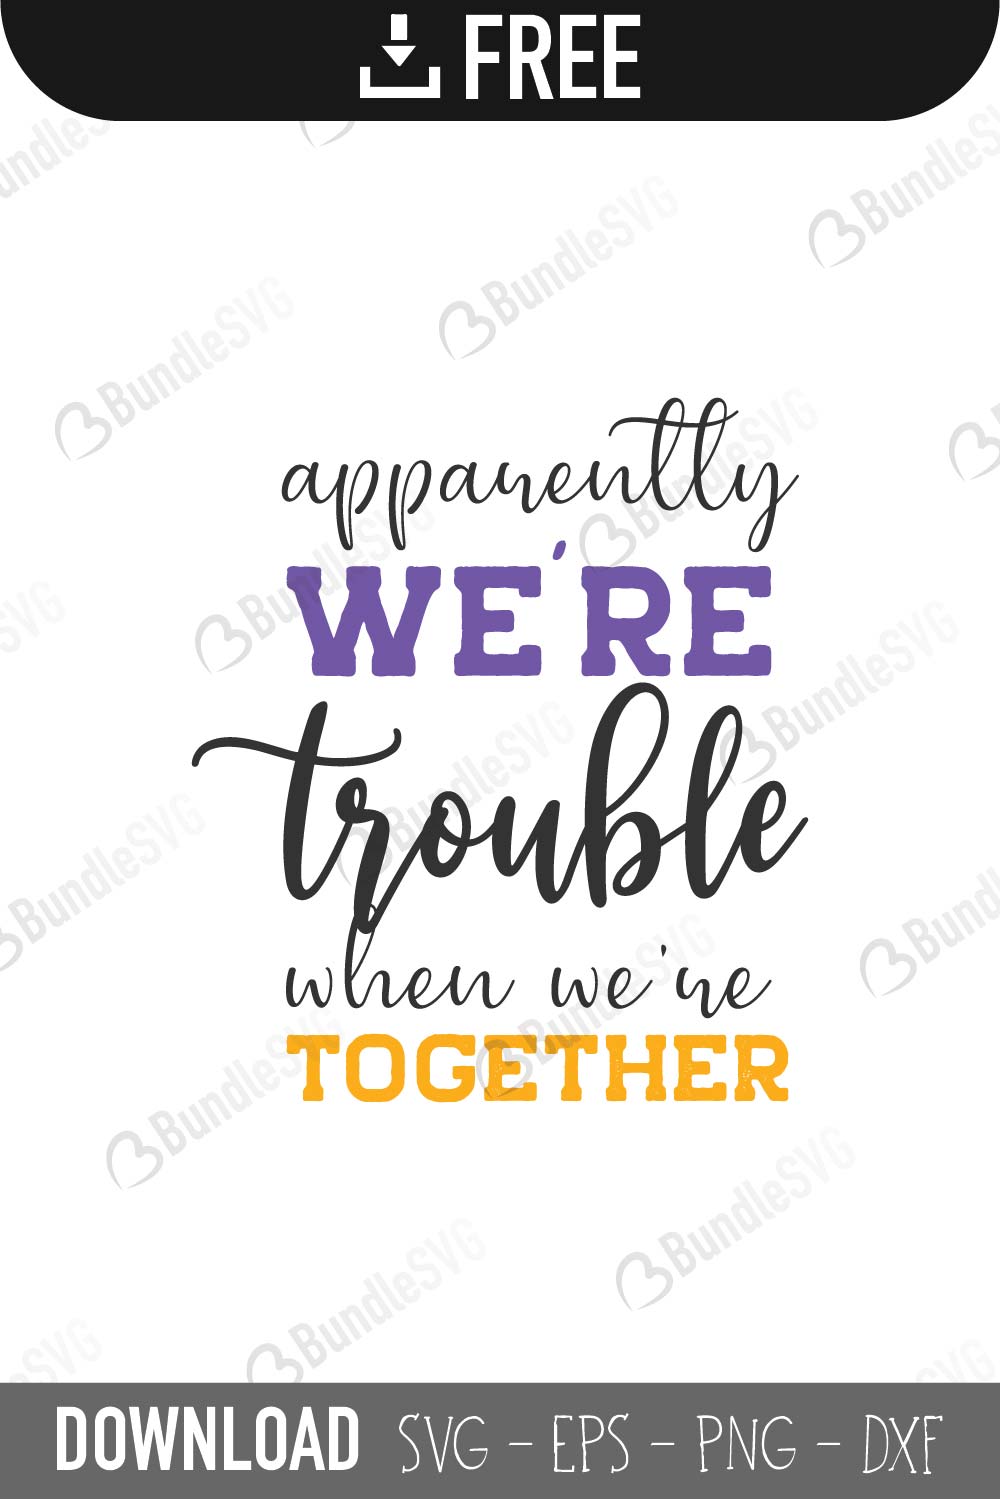 Download We Re Trouble Together Svg Cut Files Free Download Bundlesvg